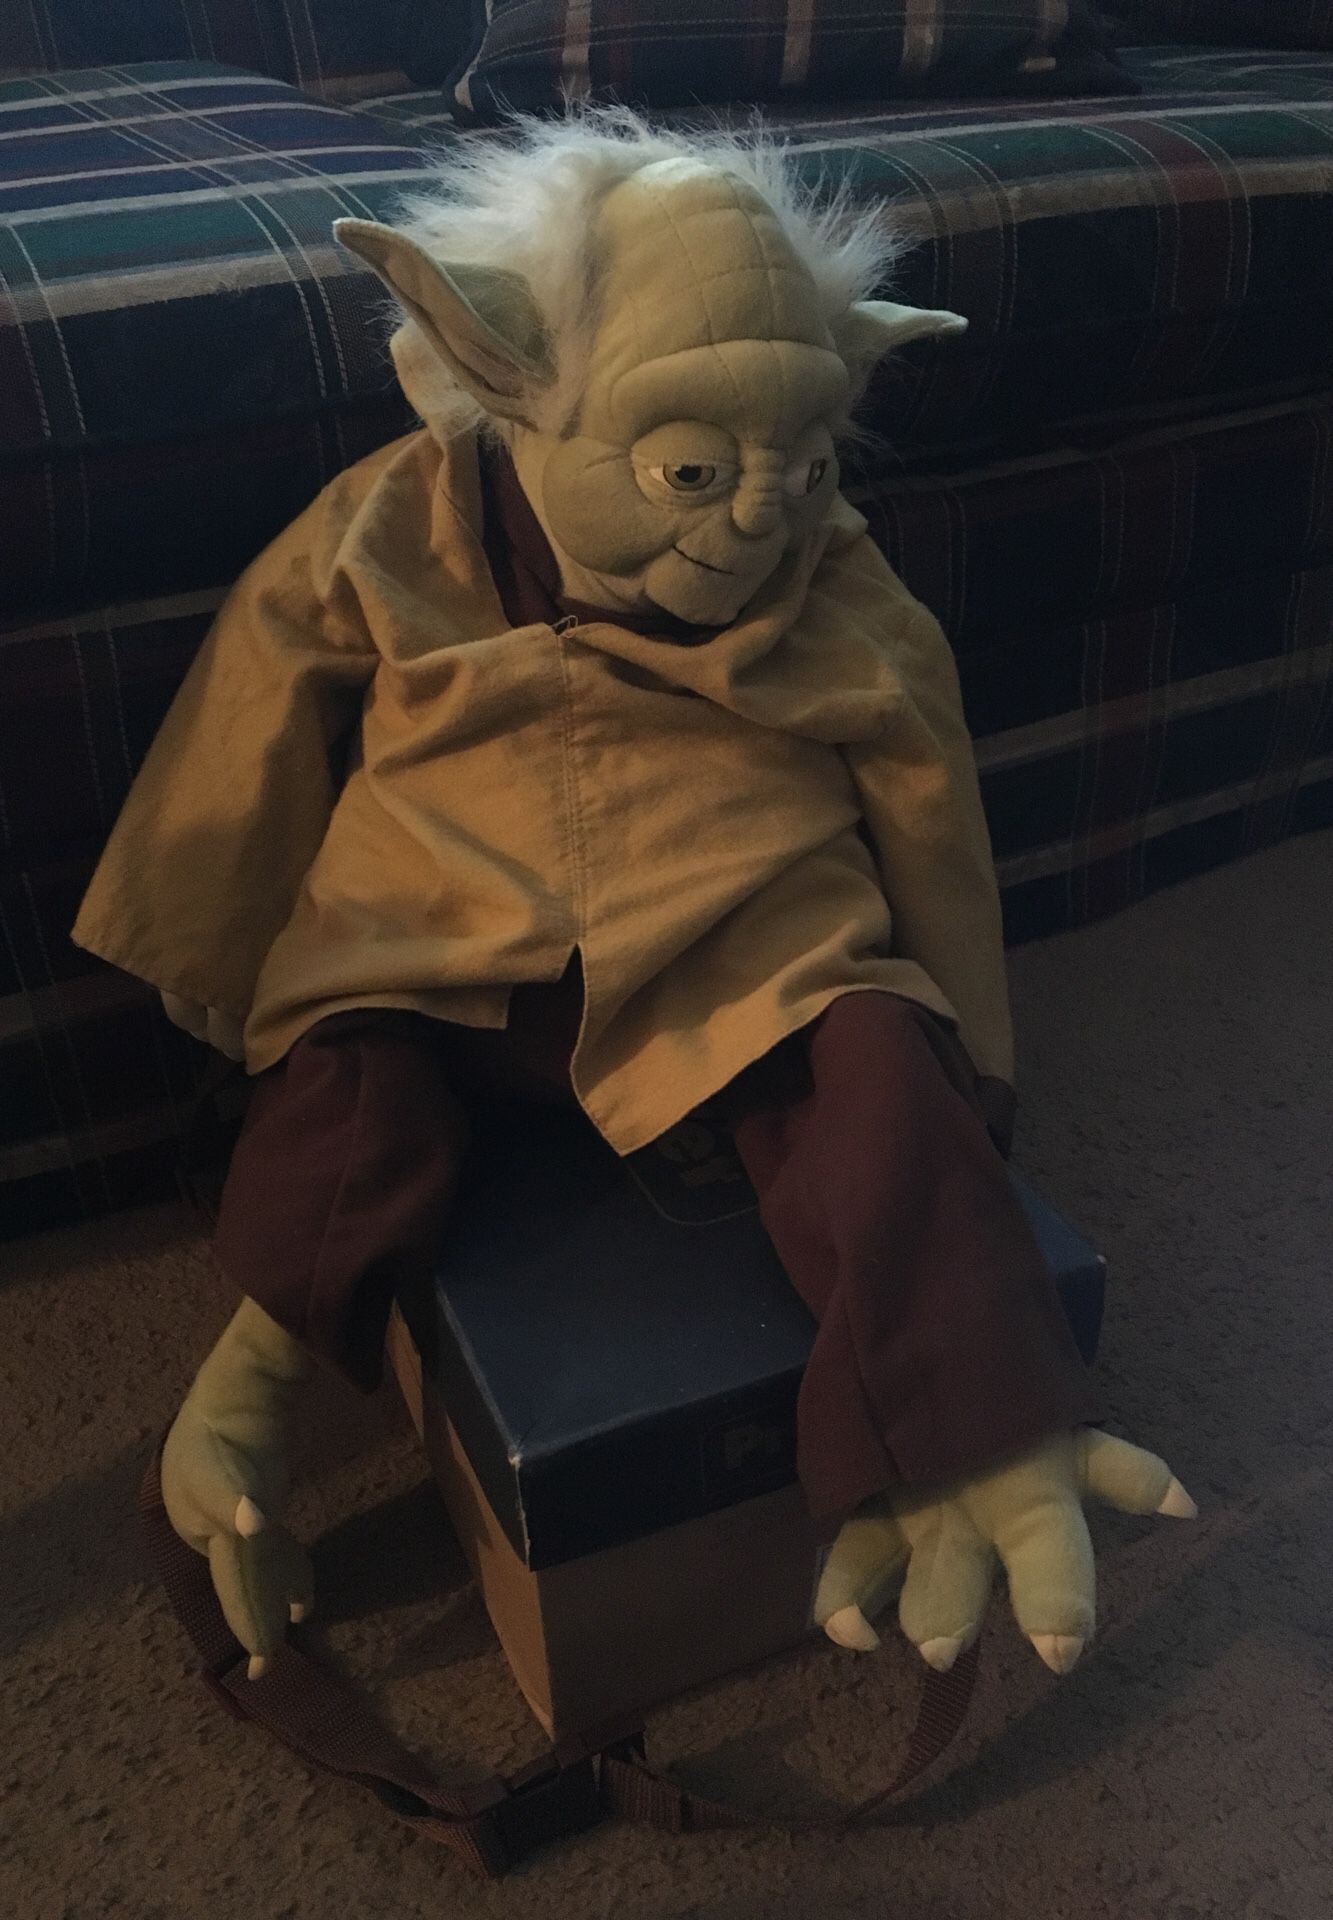 Star Wars Yoda back pack